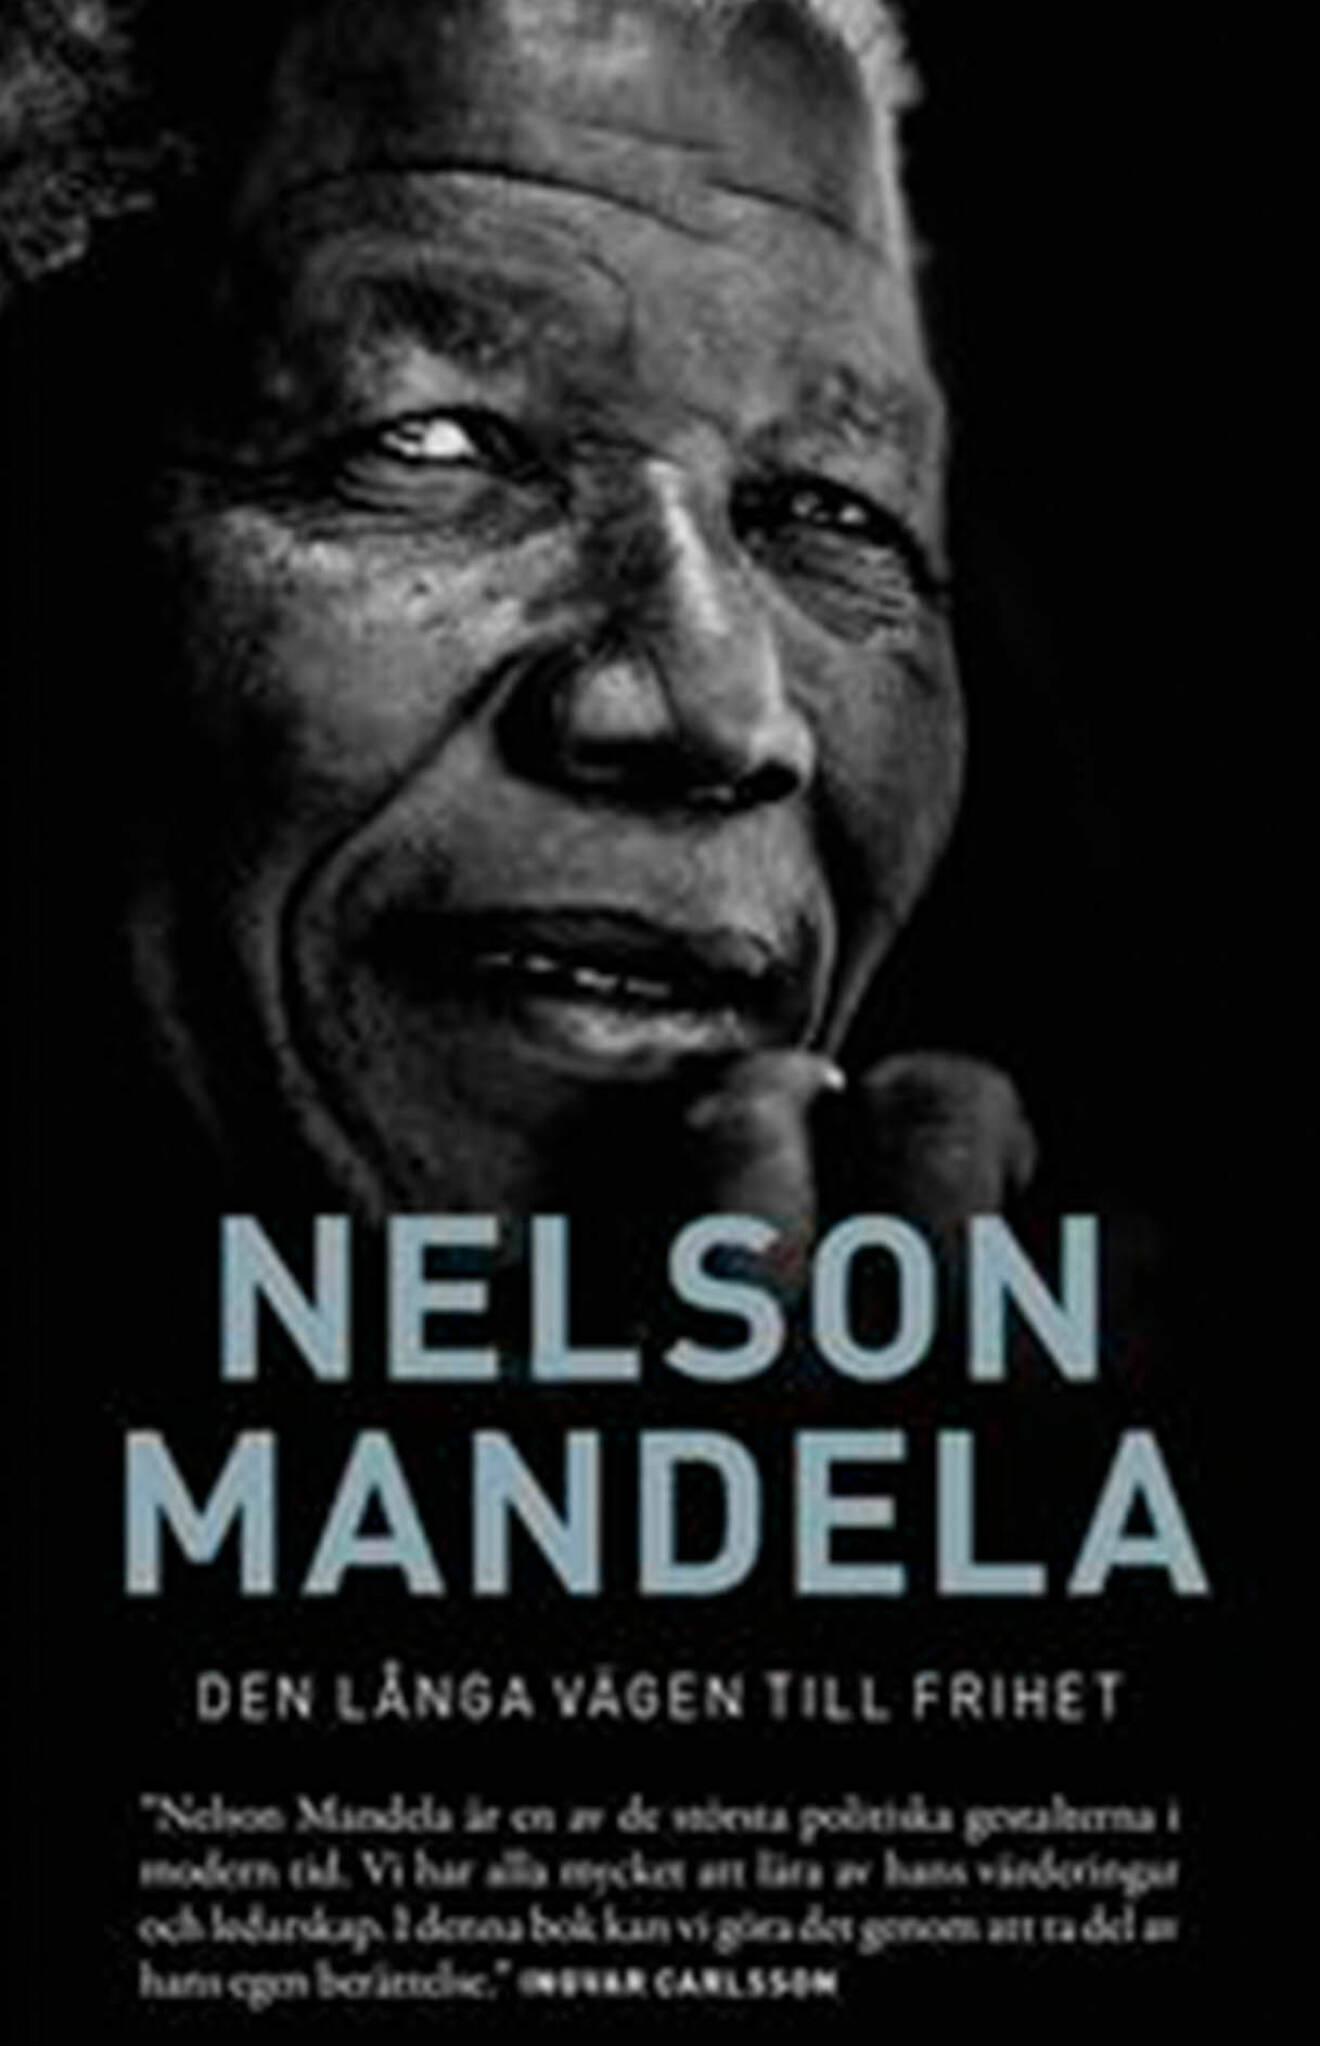 Bokomslag till Den långa vägen till frihet- Bild på Nelson Mandela.